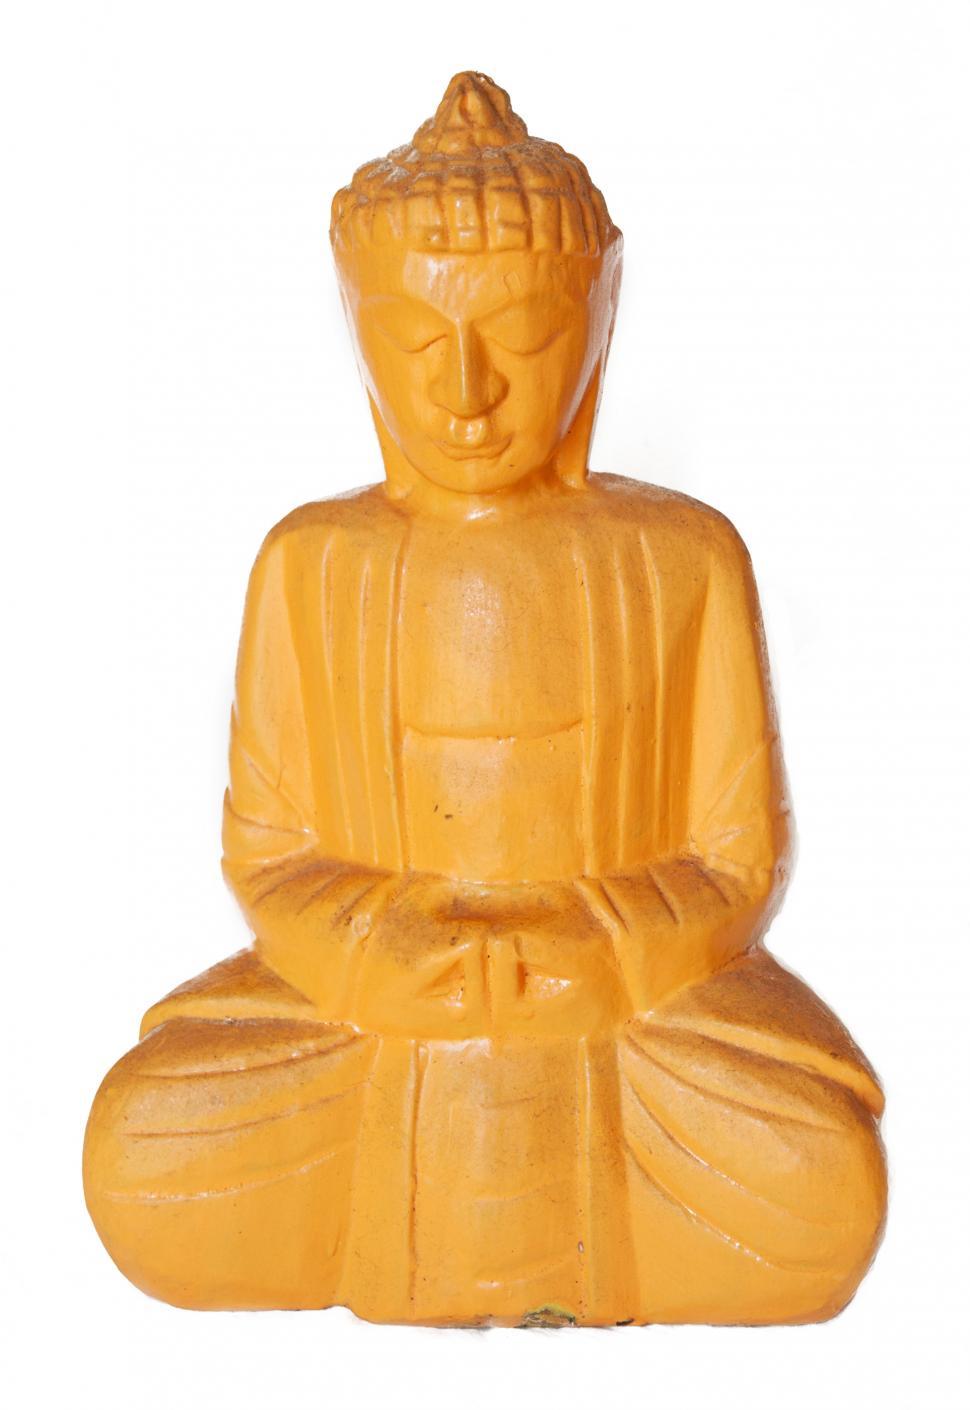 Free Image of Yellow buddha statue 